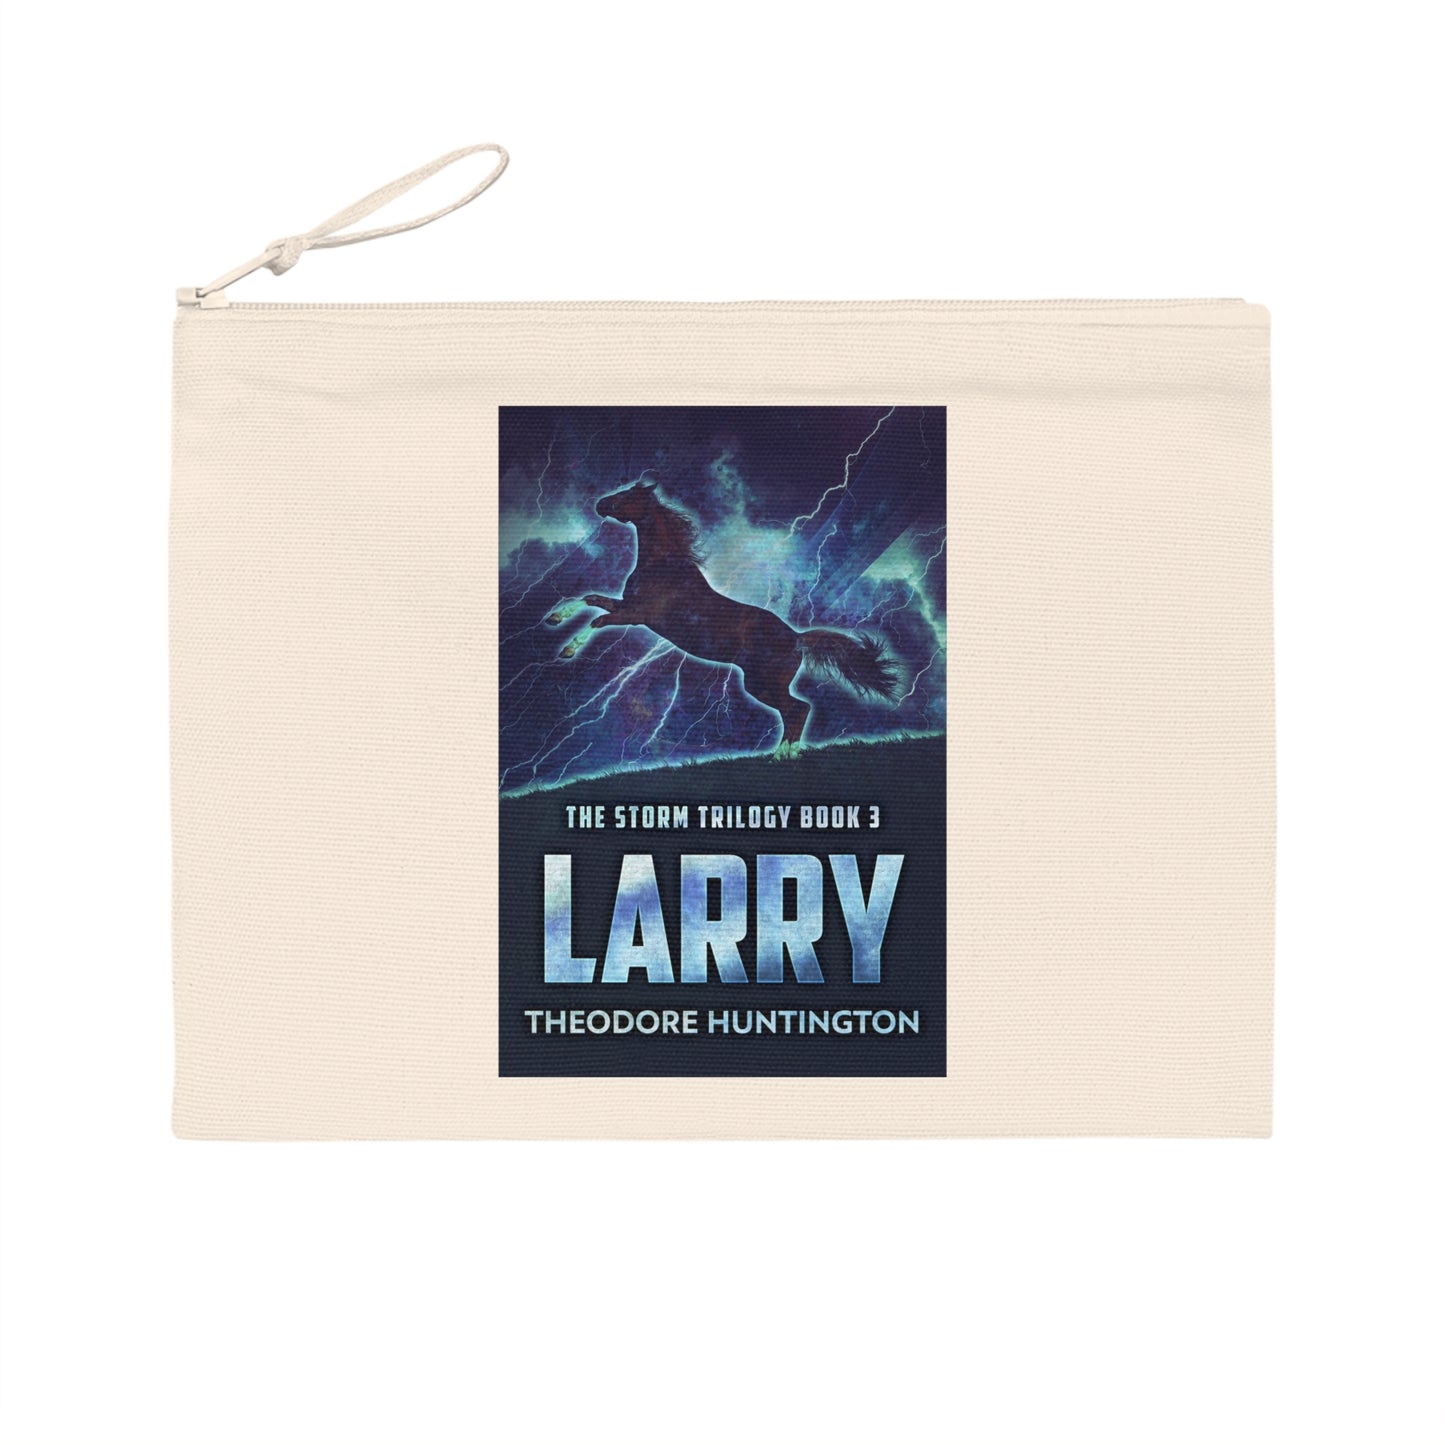 Larry - Pencil Case